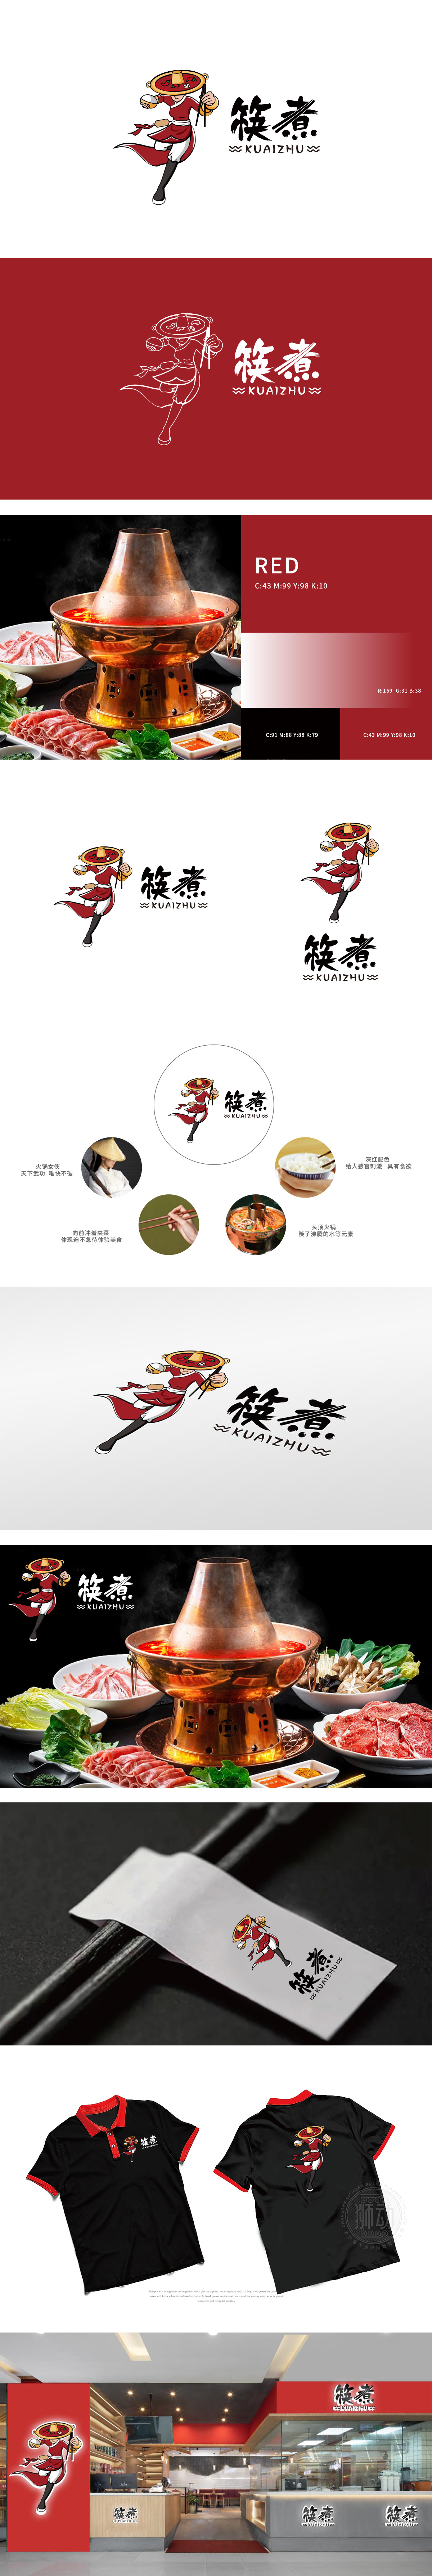 筷煮	餐饮	吉祥物设计